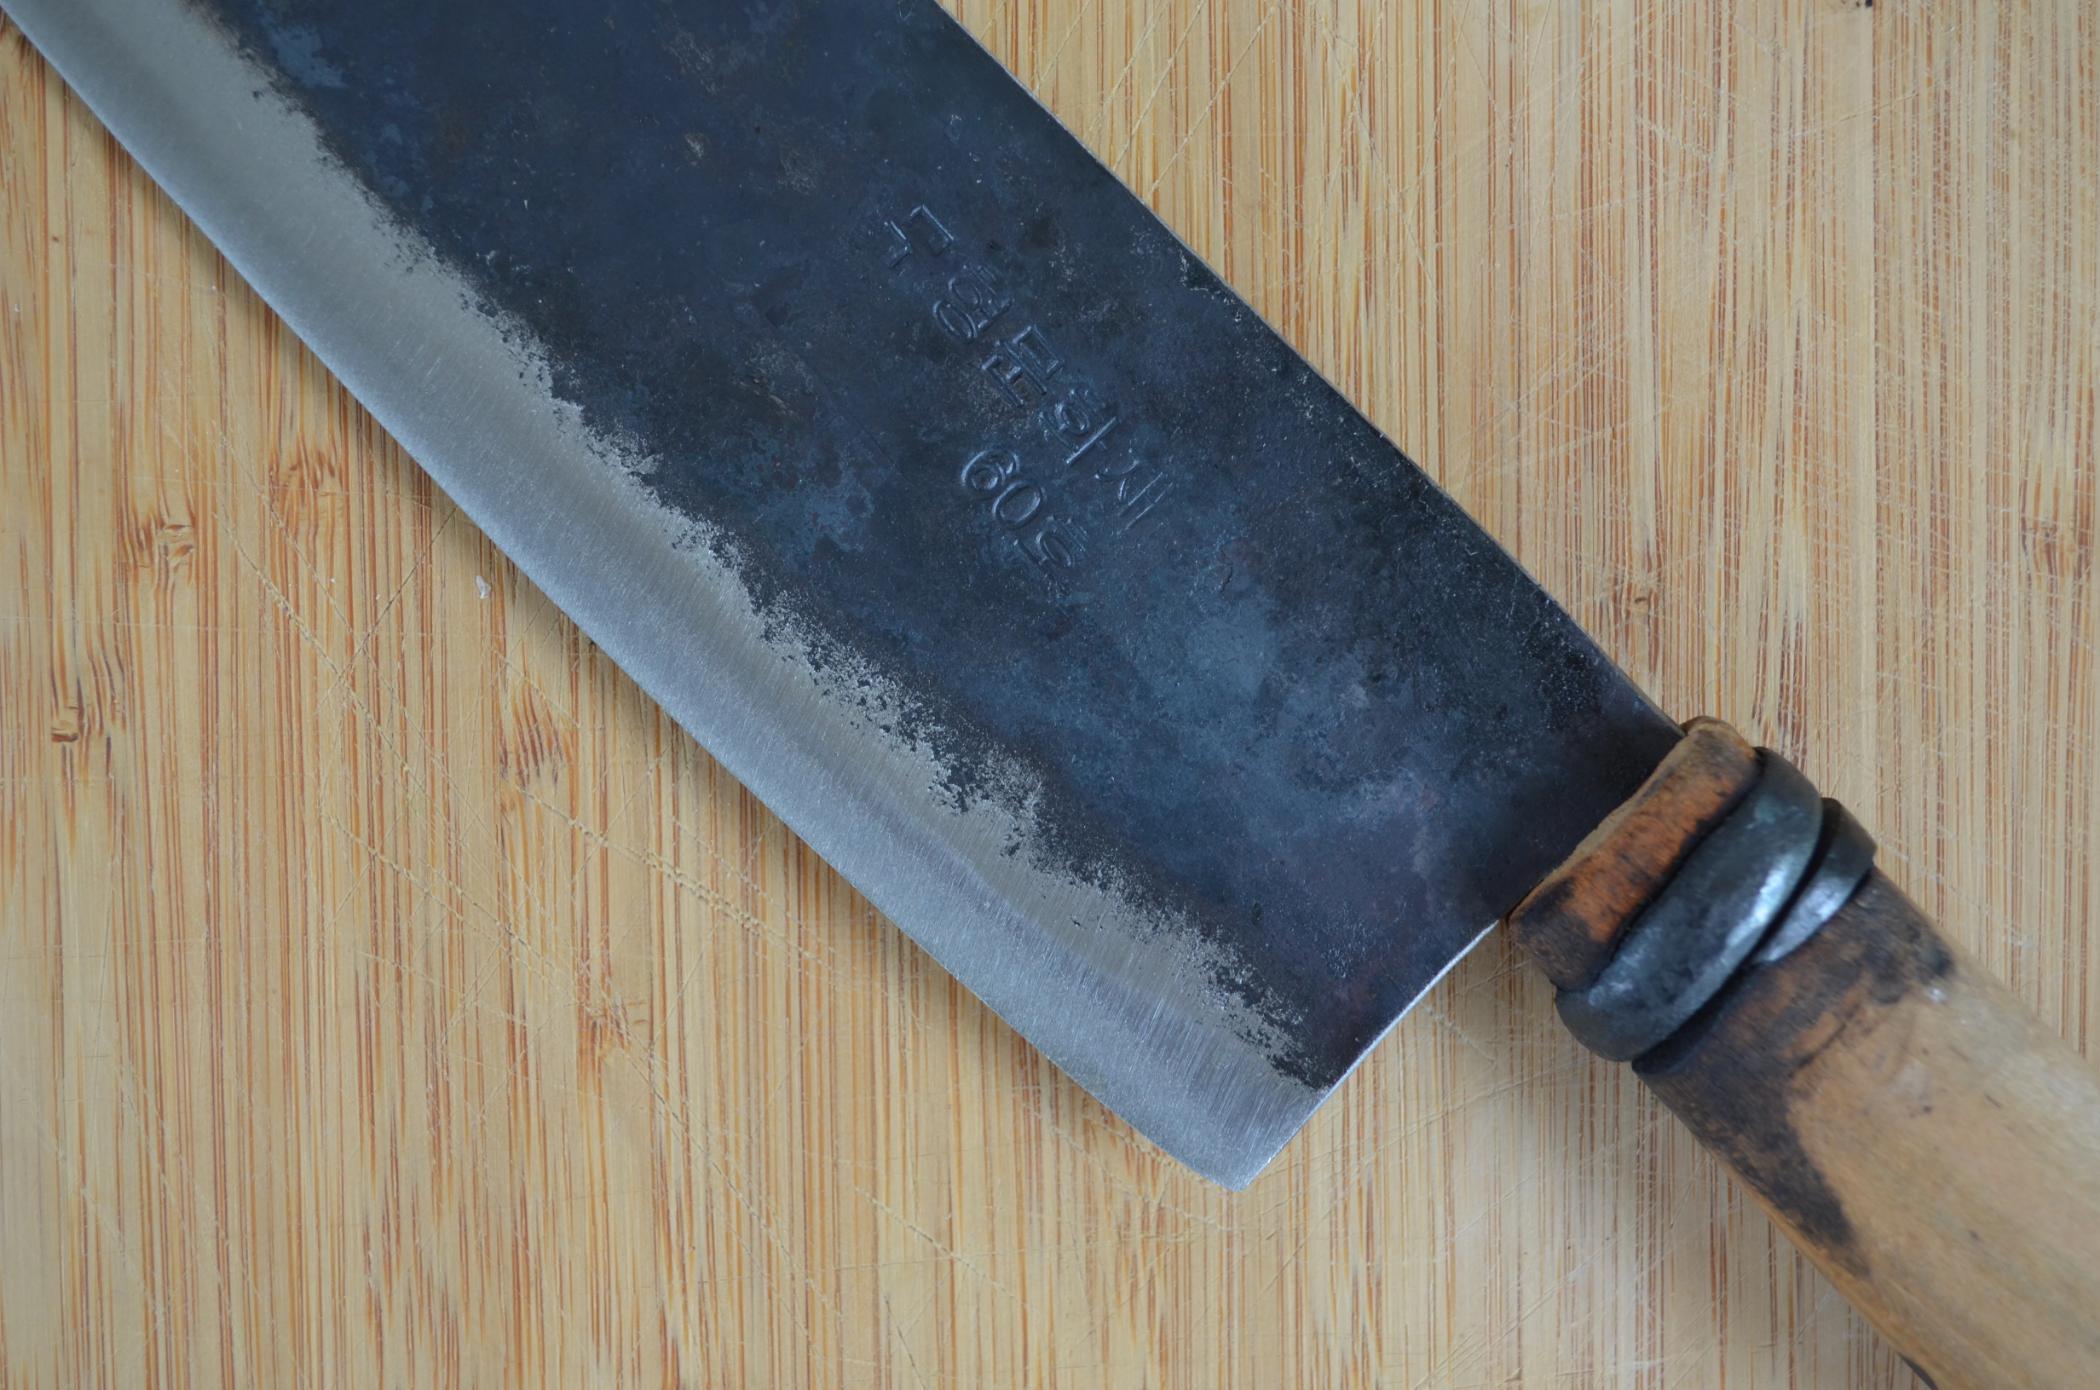 Master Shin's Anvil #60 Kitchen Knife | Small